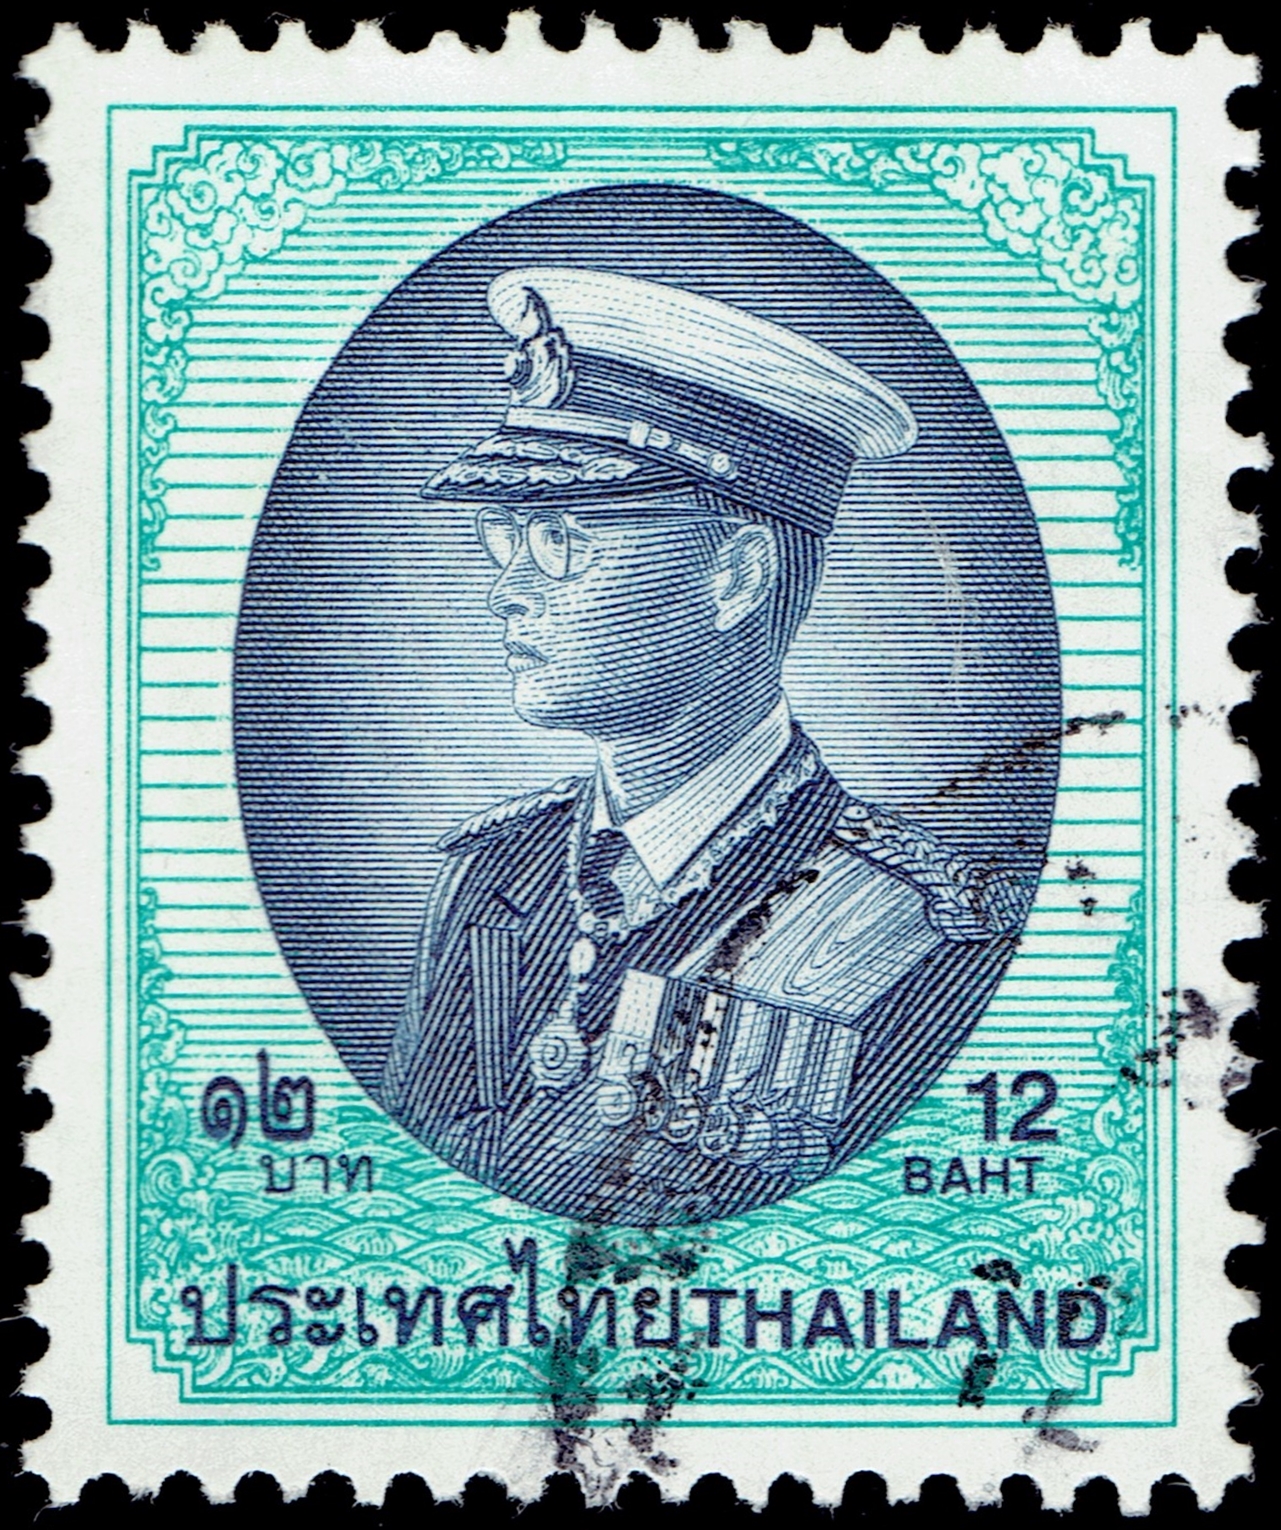 Thailand #1876 (1999)